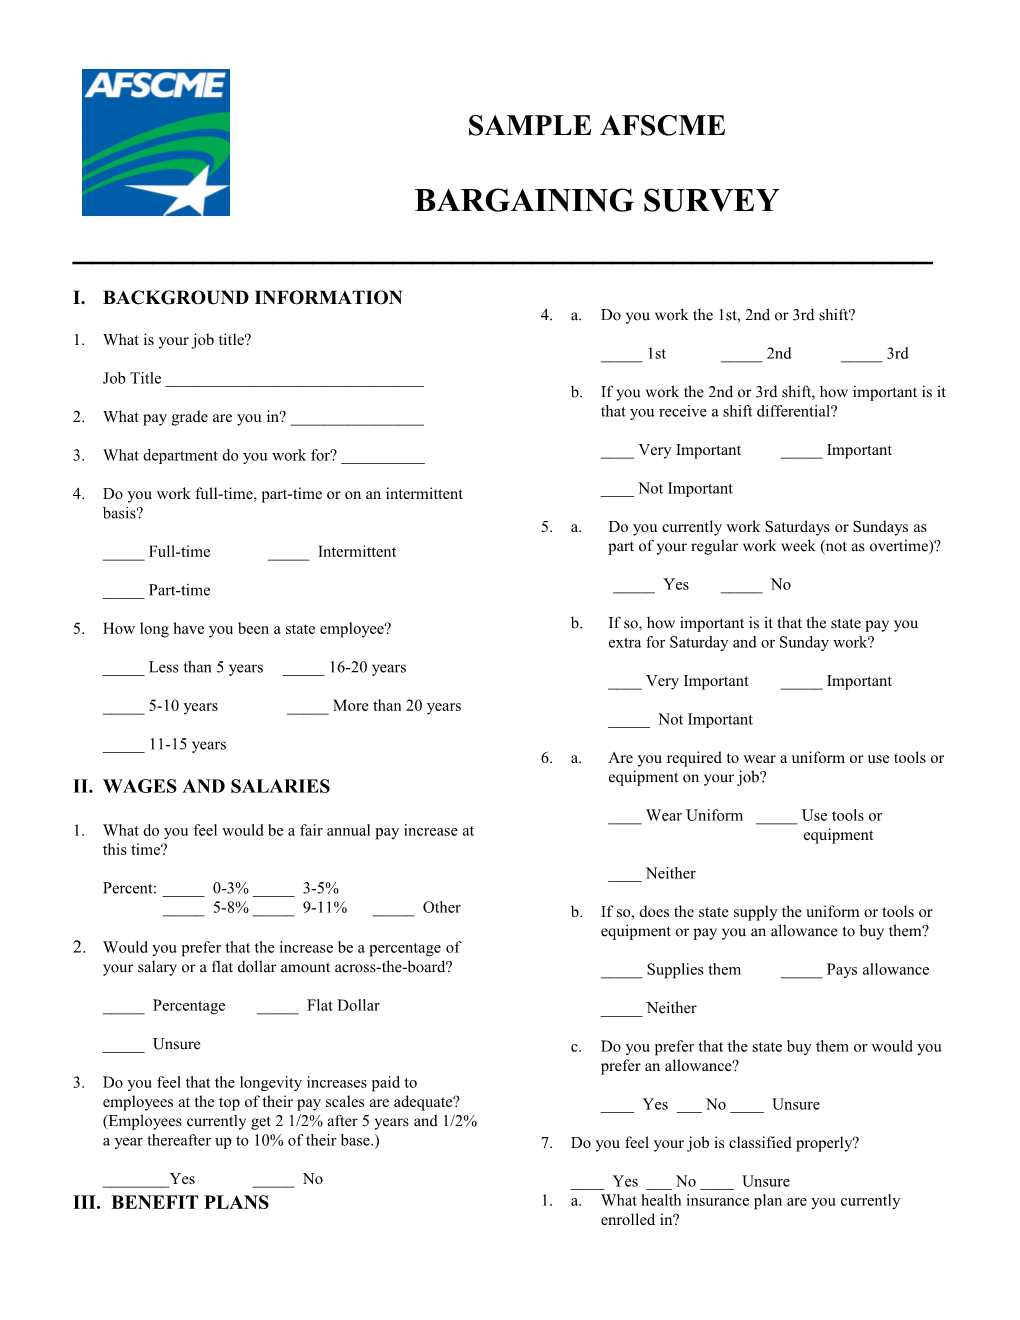 Bargaining Survey